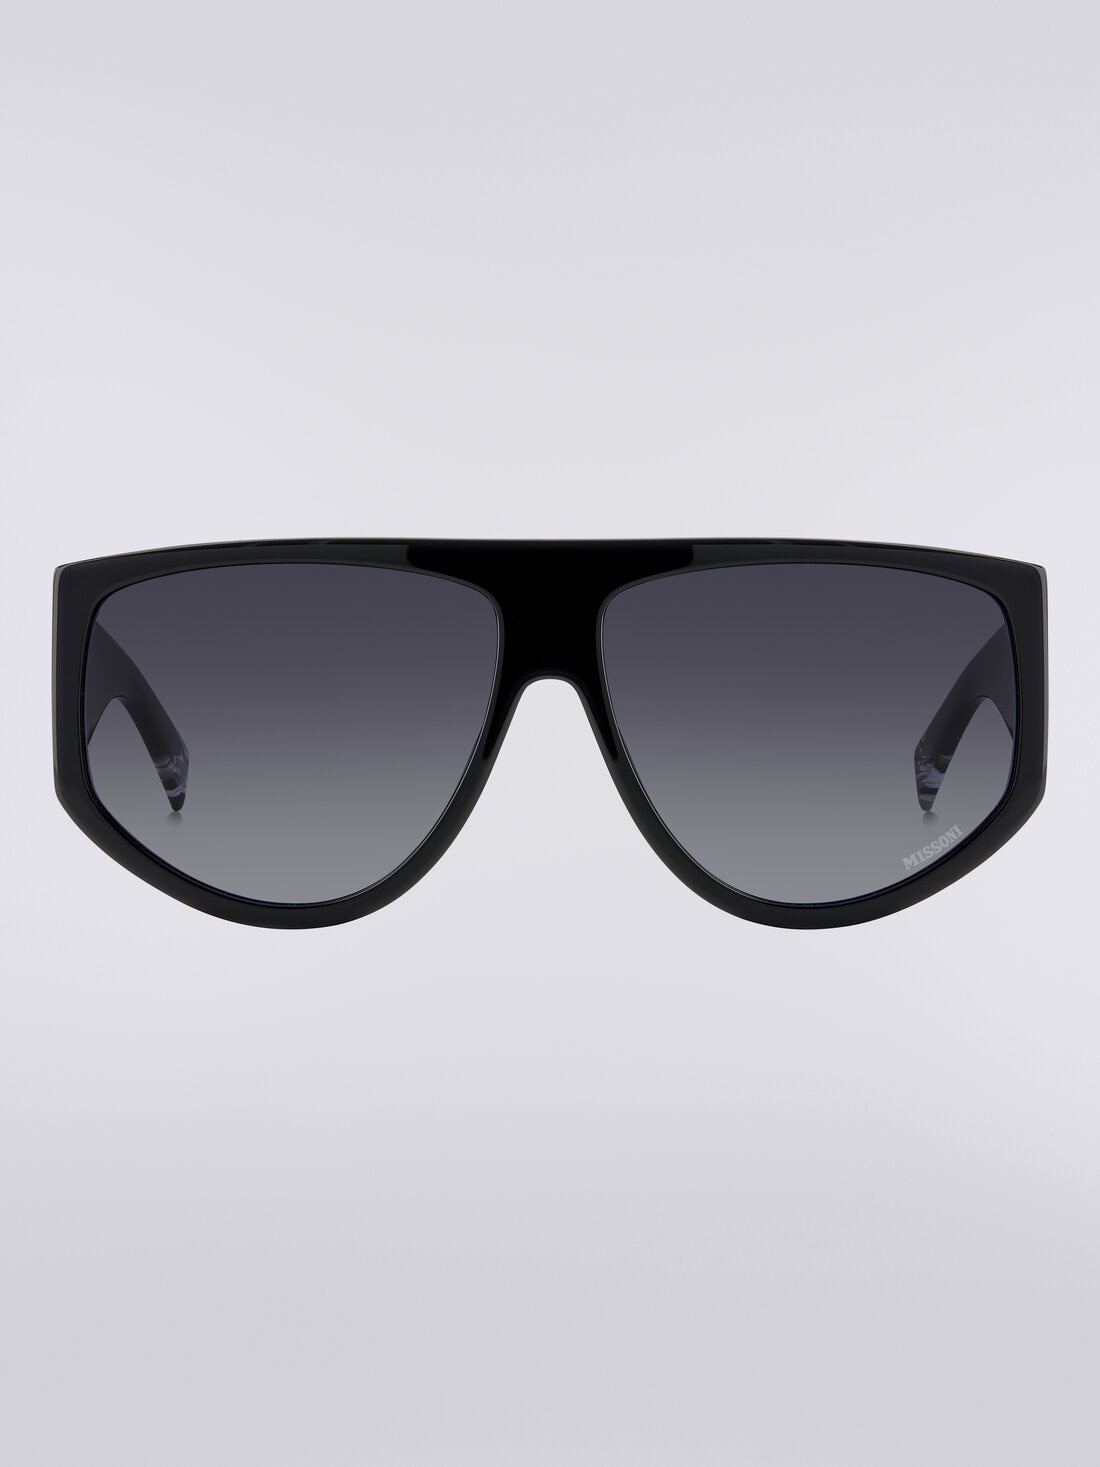 Sonnenbrille in Tropfenform mit übergroßen Bügeln, Mehrfarbig  - 8053147115467 - 0